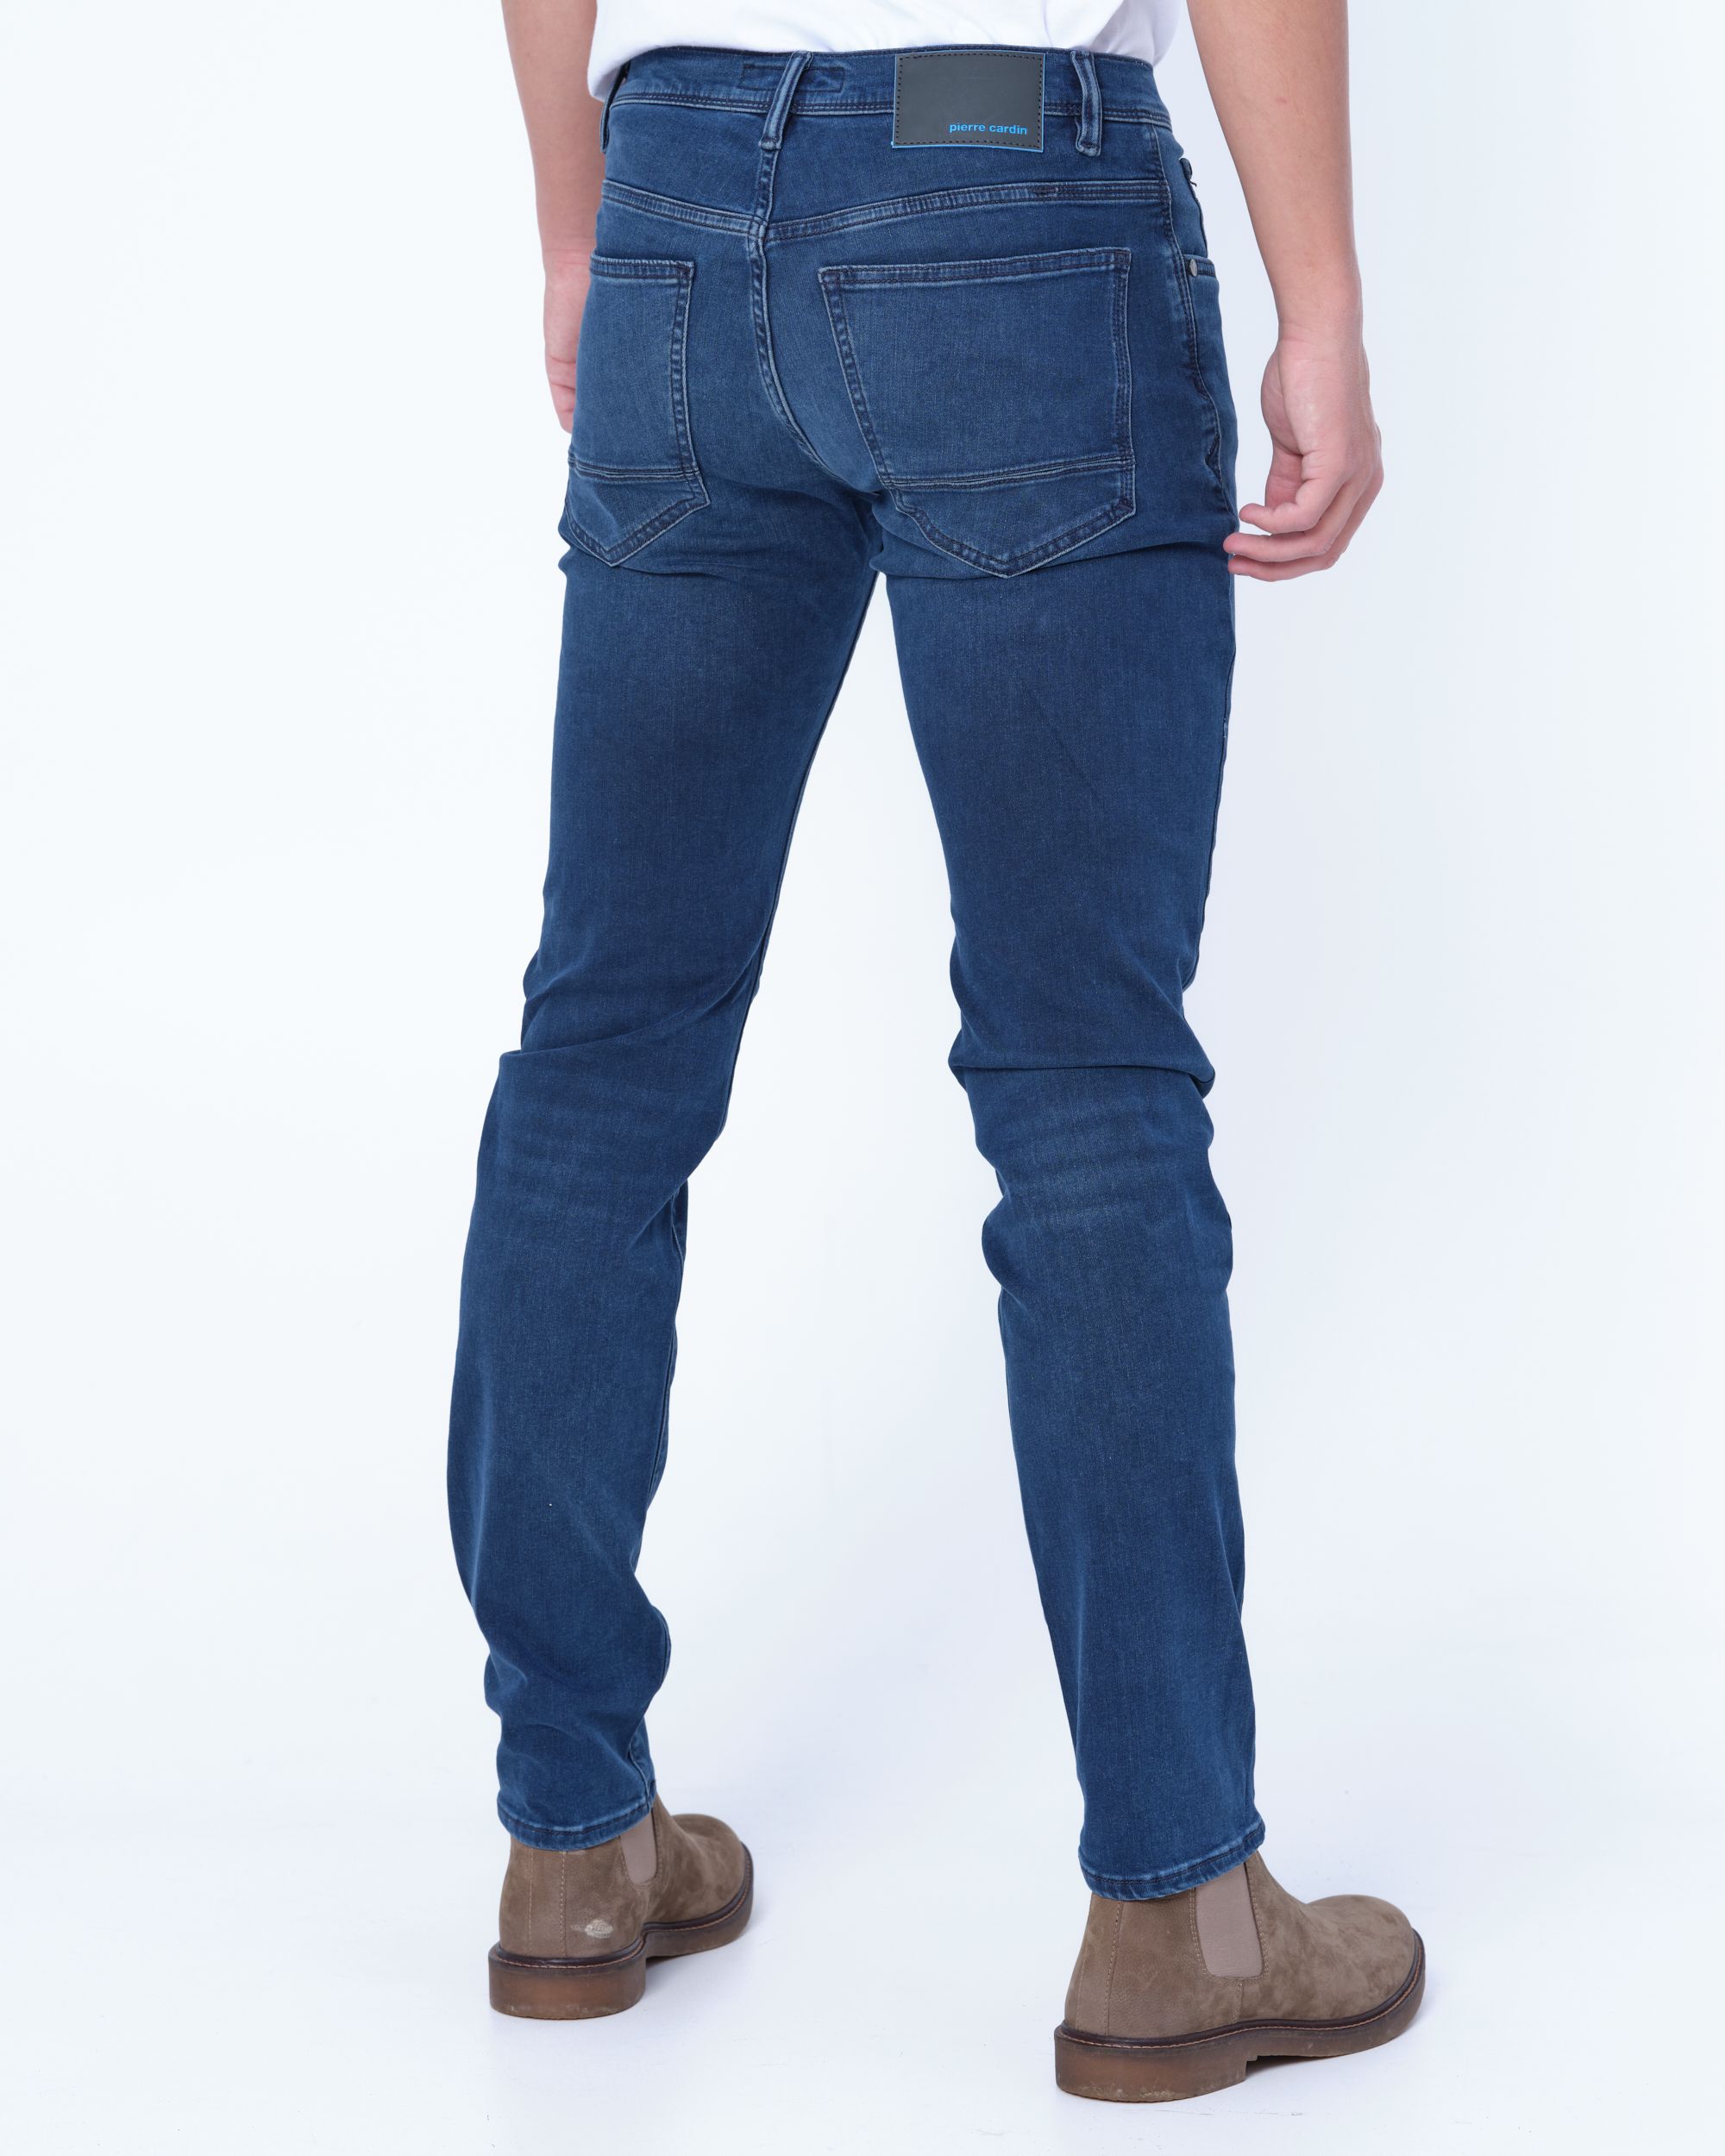 Pierre Cardin Antibes Jeans Donker blauw 080417-001-30/30